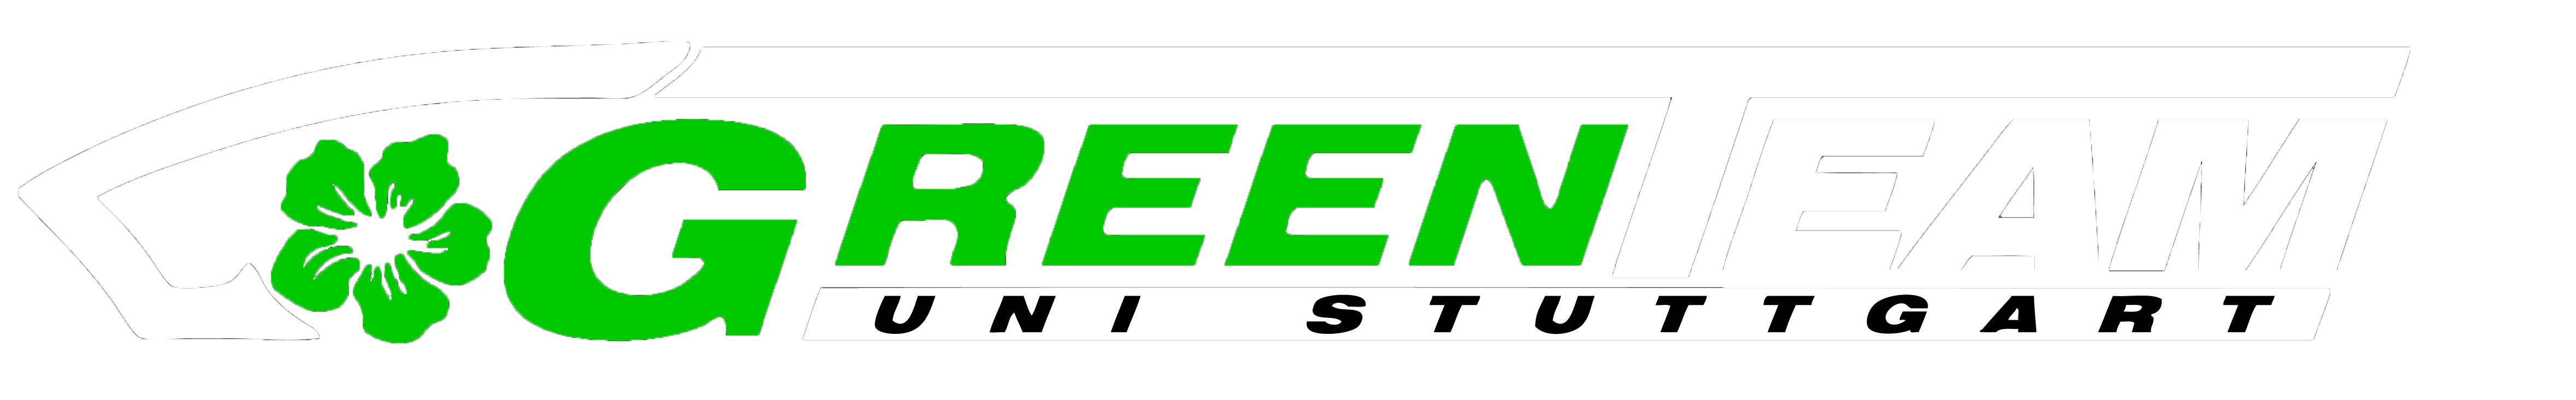 GreenTeam – Season Review E0711‑5 – 2013/2014